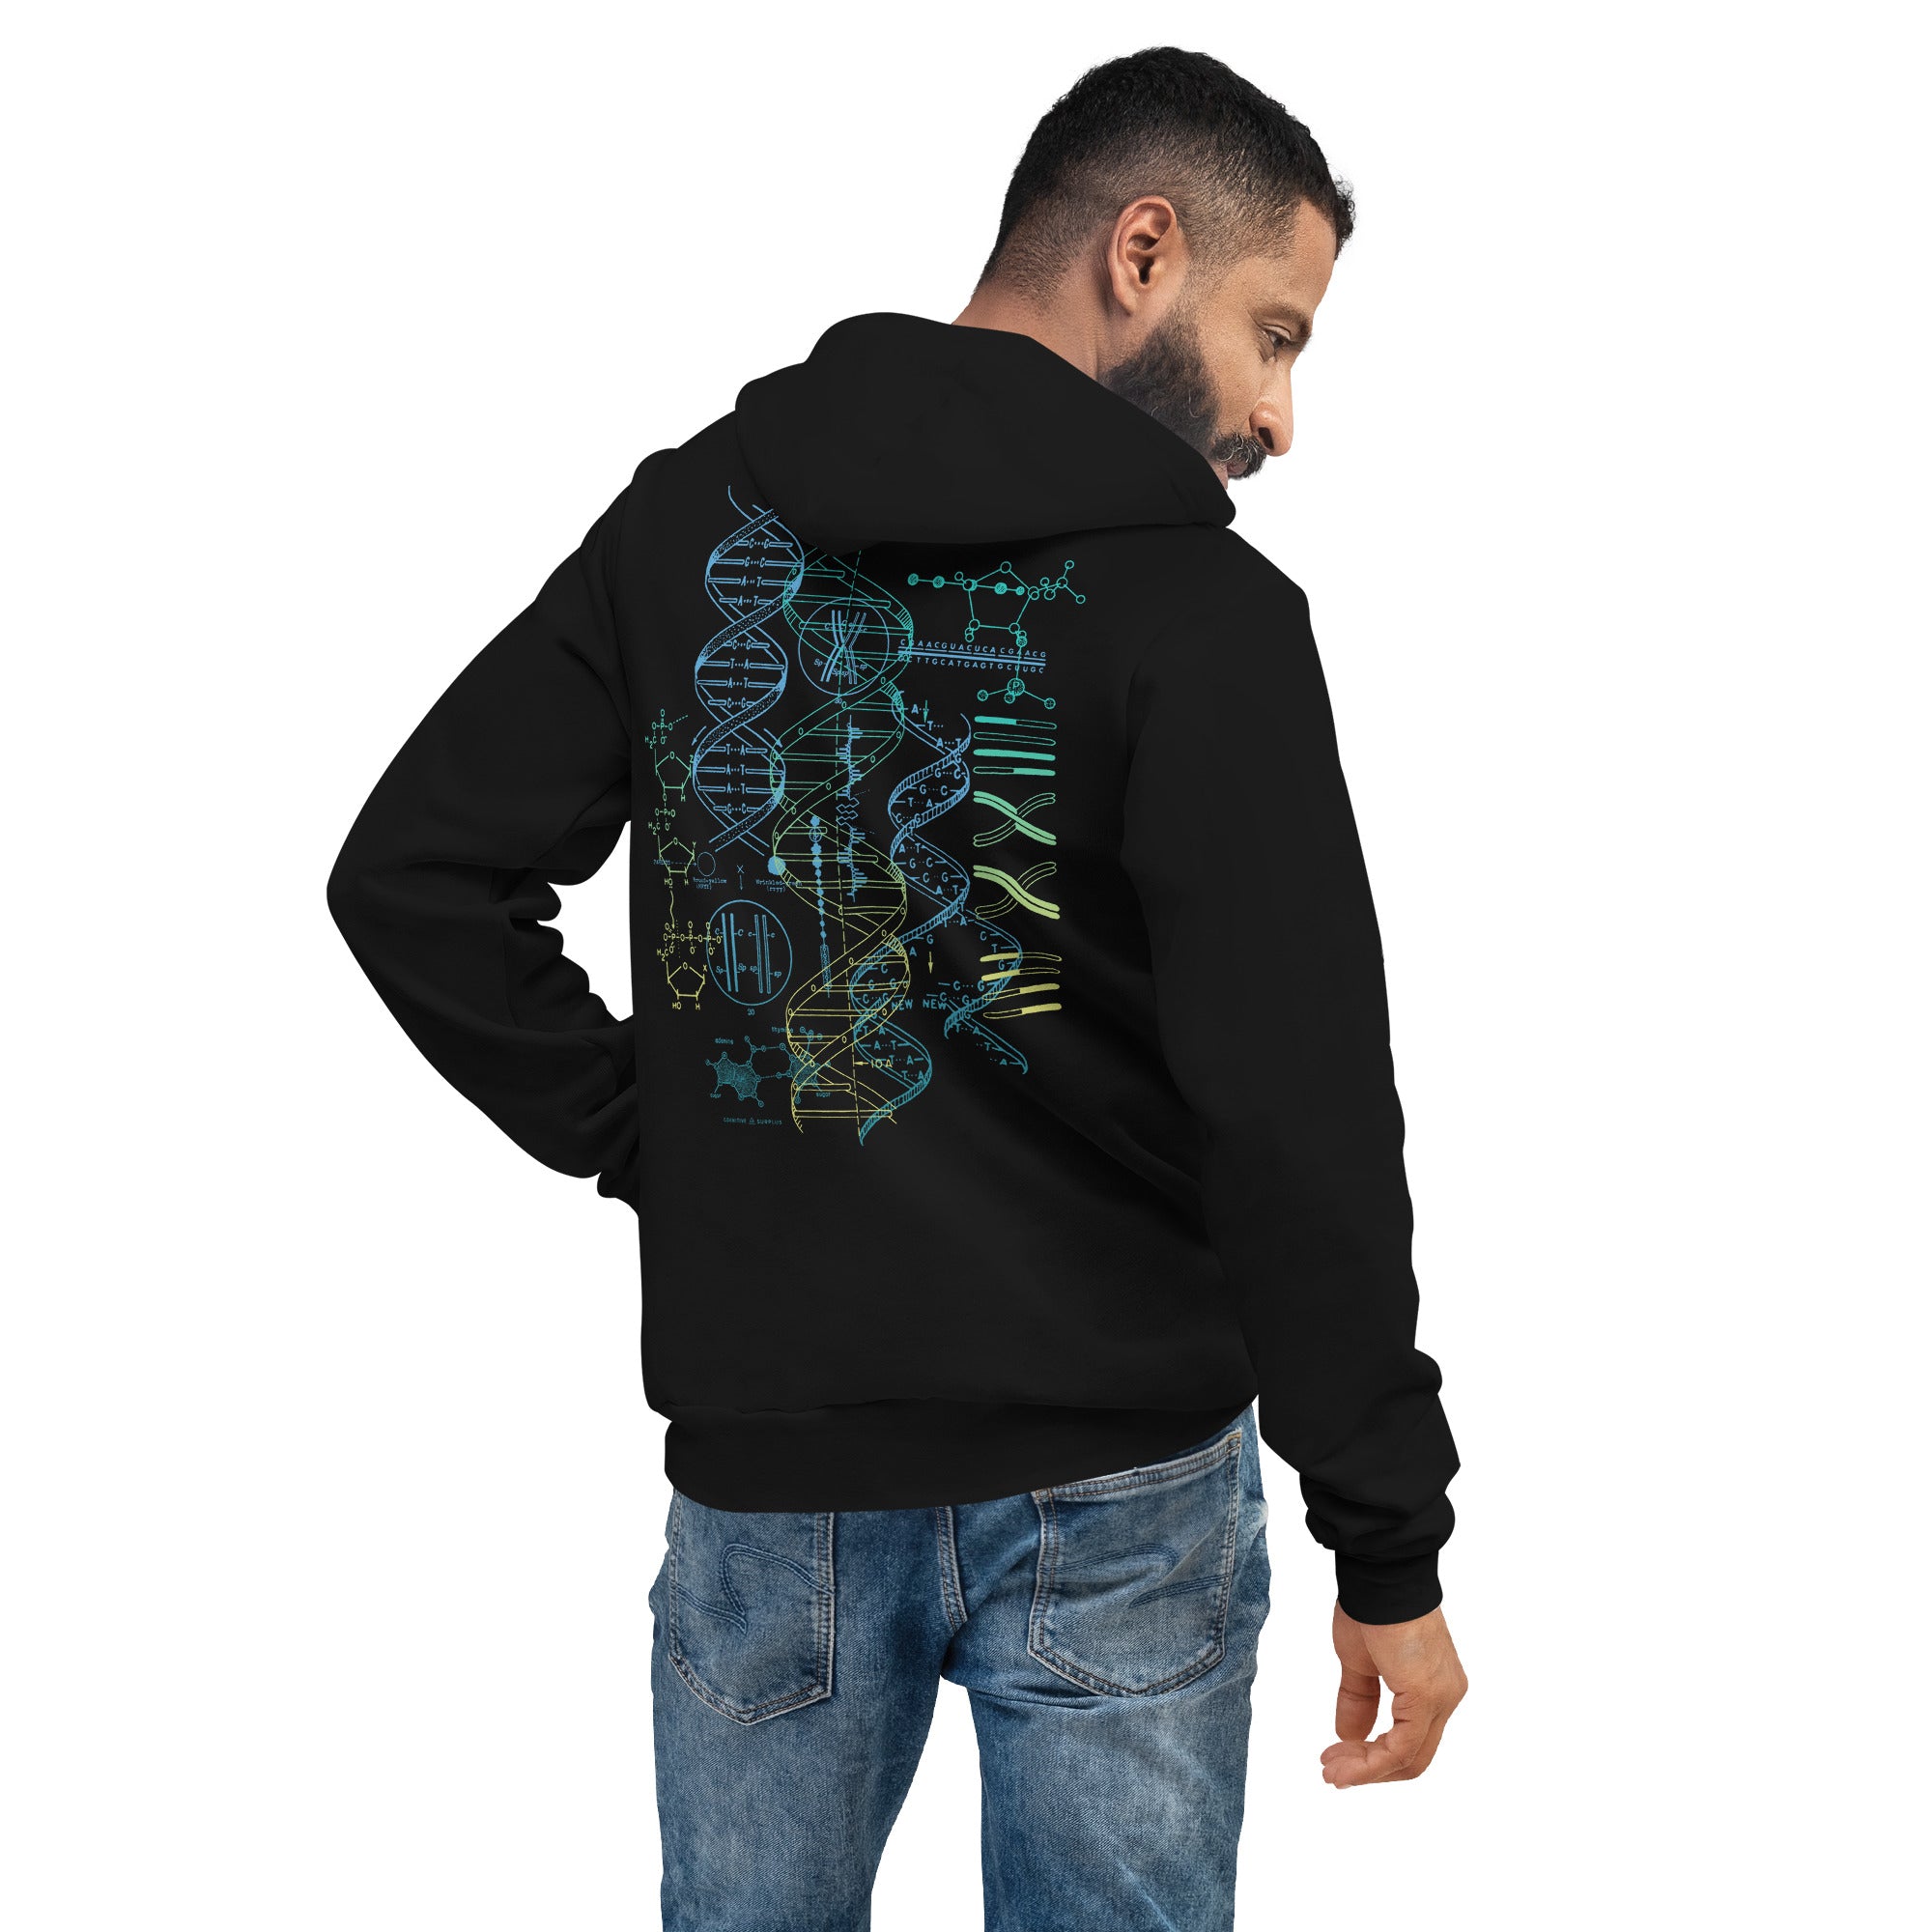 unisex-pullover-hoodie-black-back-656e61c6cd0bc.jpg